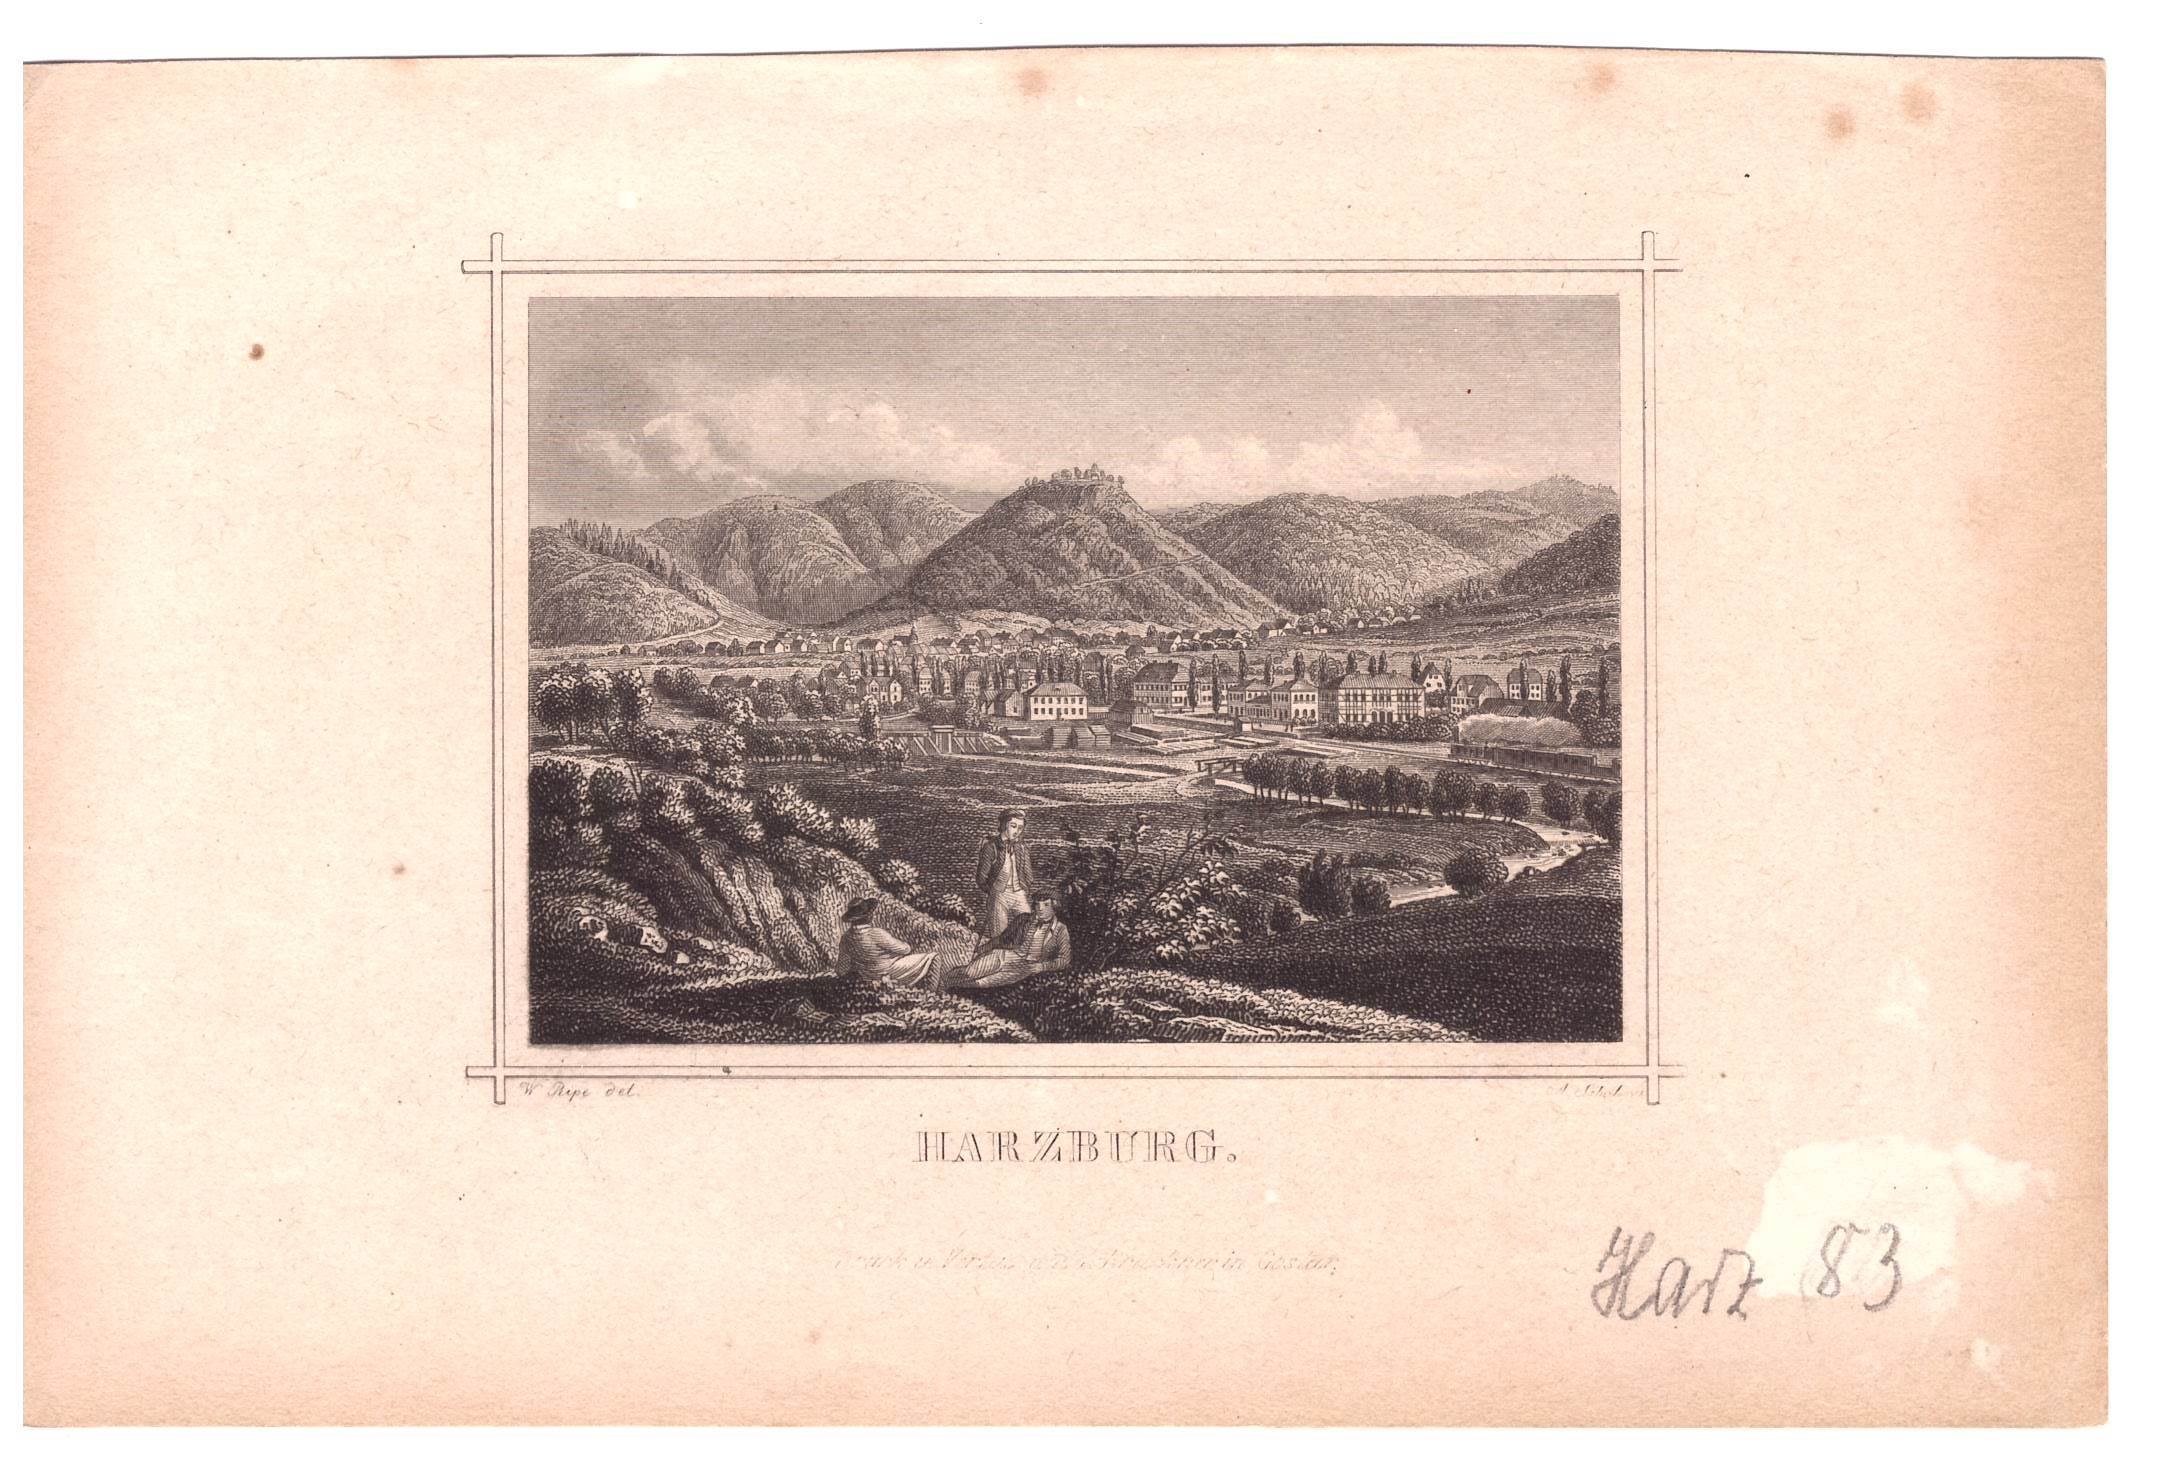 Bad Harzburg: Blick auf den Bahnhof und den Ort Harzburg von Nordosten, 1864 (aus: Brückner "Erinnerung an Harzburg") (Schloß Wernigerode GmbH RR-F)